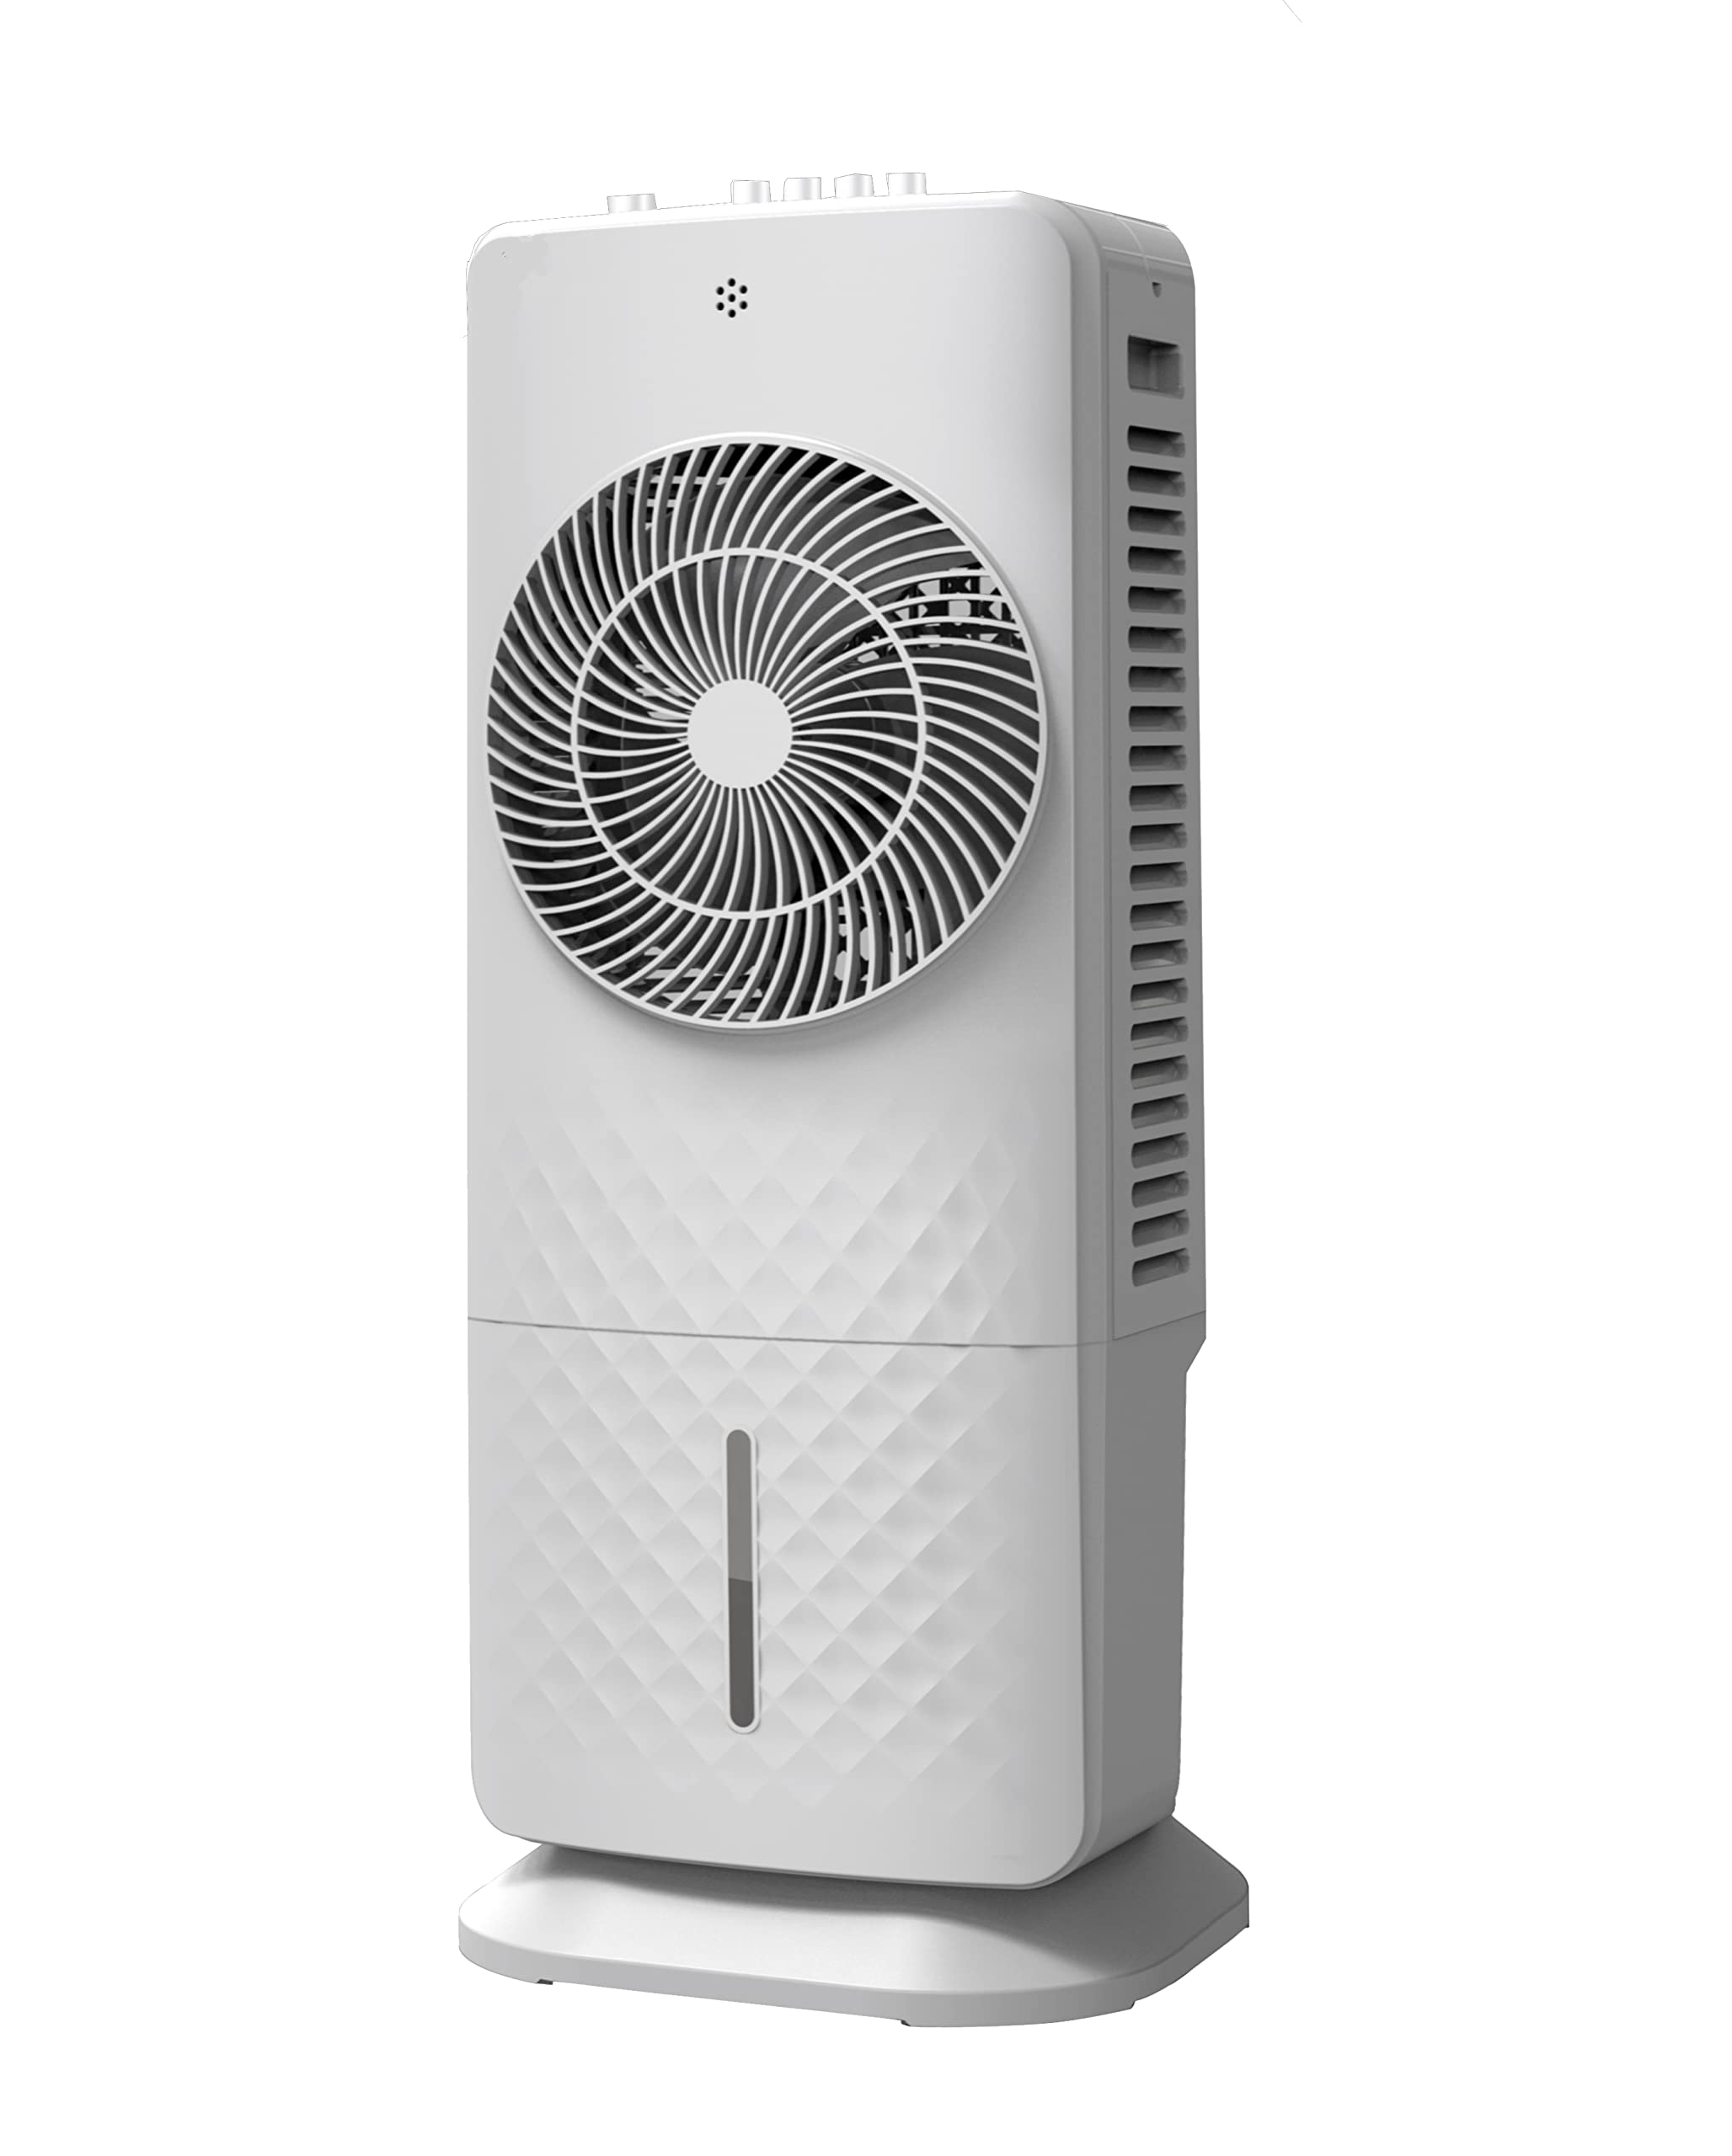 BE COOL Design-Luftkühler – Effektive Kühlung für Innenbereich, inkl. Luftreinigung und Befeuchtung, energiesparender und geräuscharmer Betrieb – 5 L, Weiß